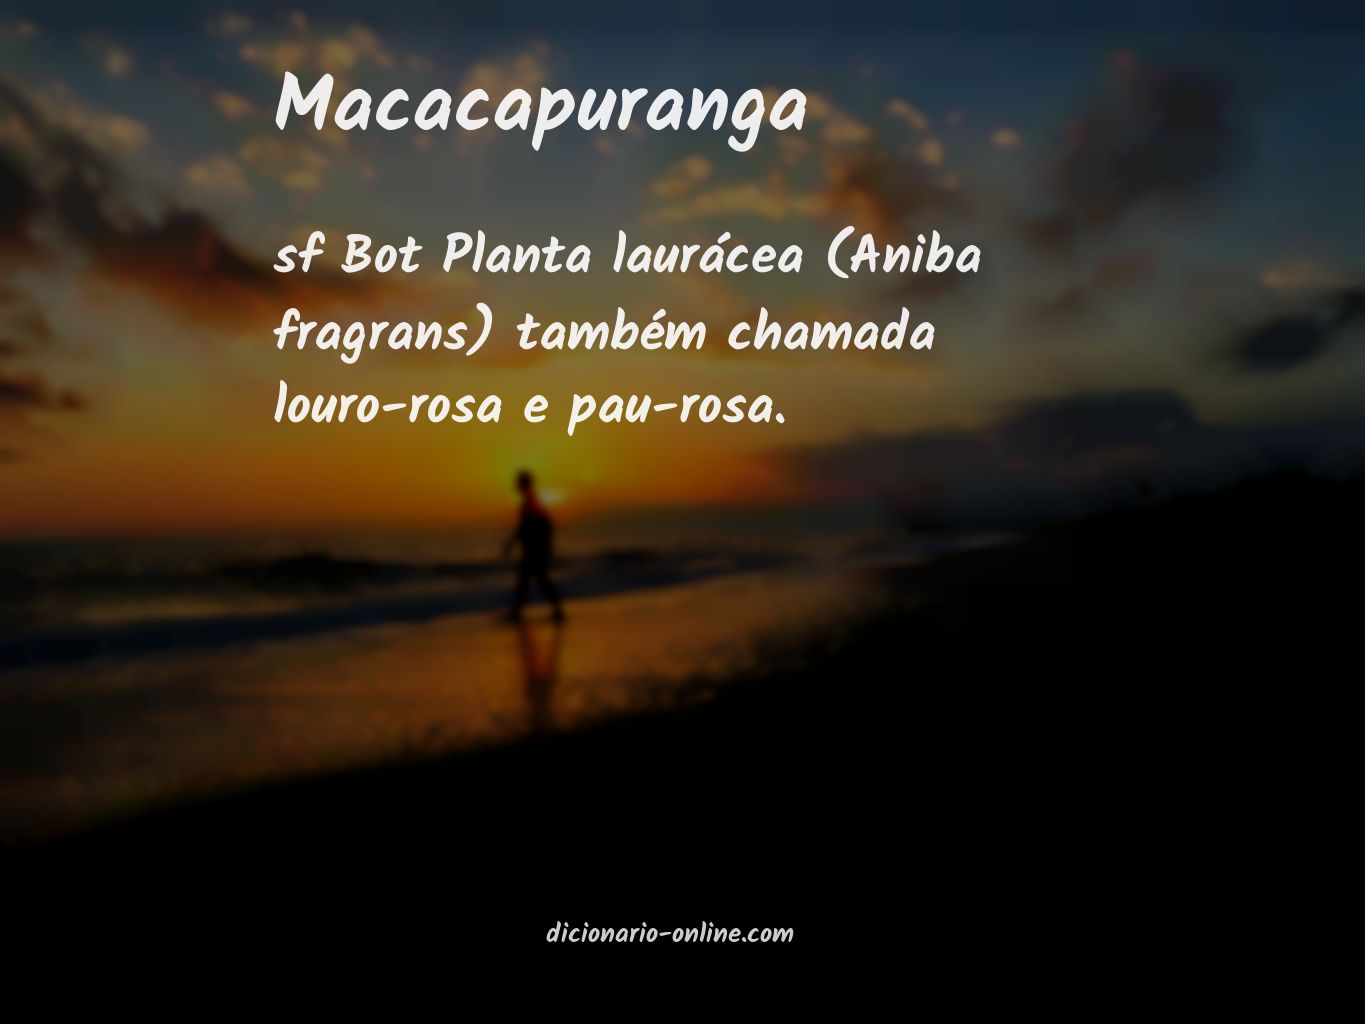 Significado de macacapuranga